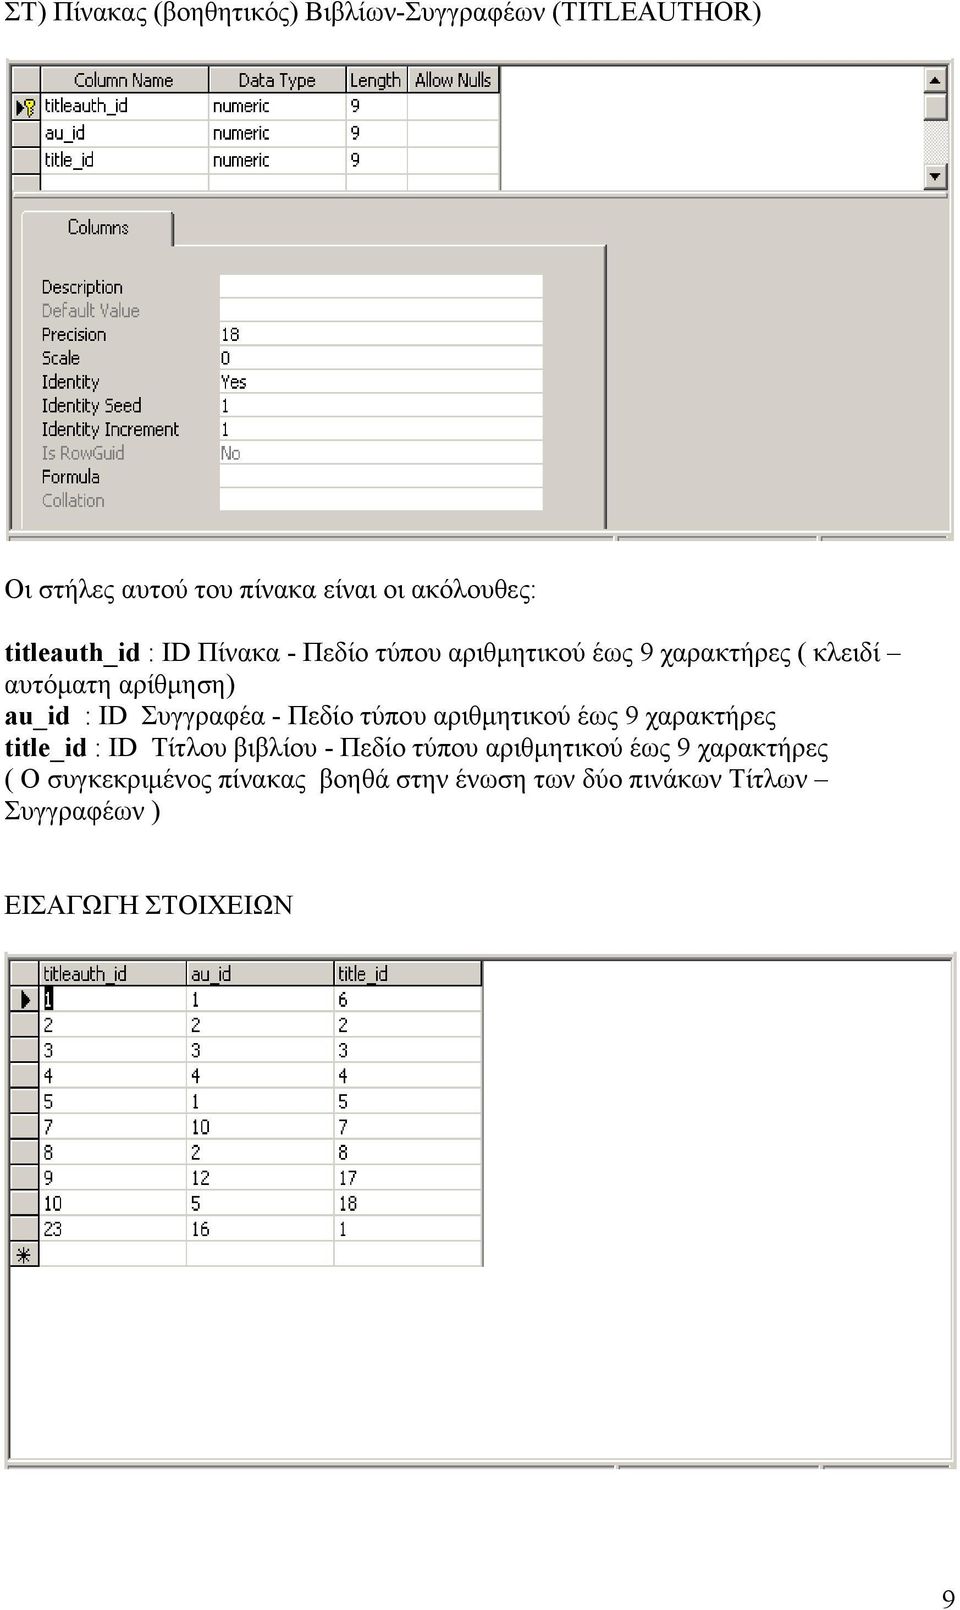 Συγγραφέα - Πεδίο τύπου αριθμητικού έως 9 χαρακτήρες title_id : ID Τίτλου βιβλίου - Πεδίο τύπου αριθμητικού